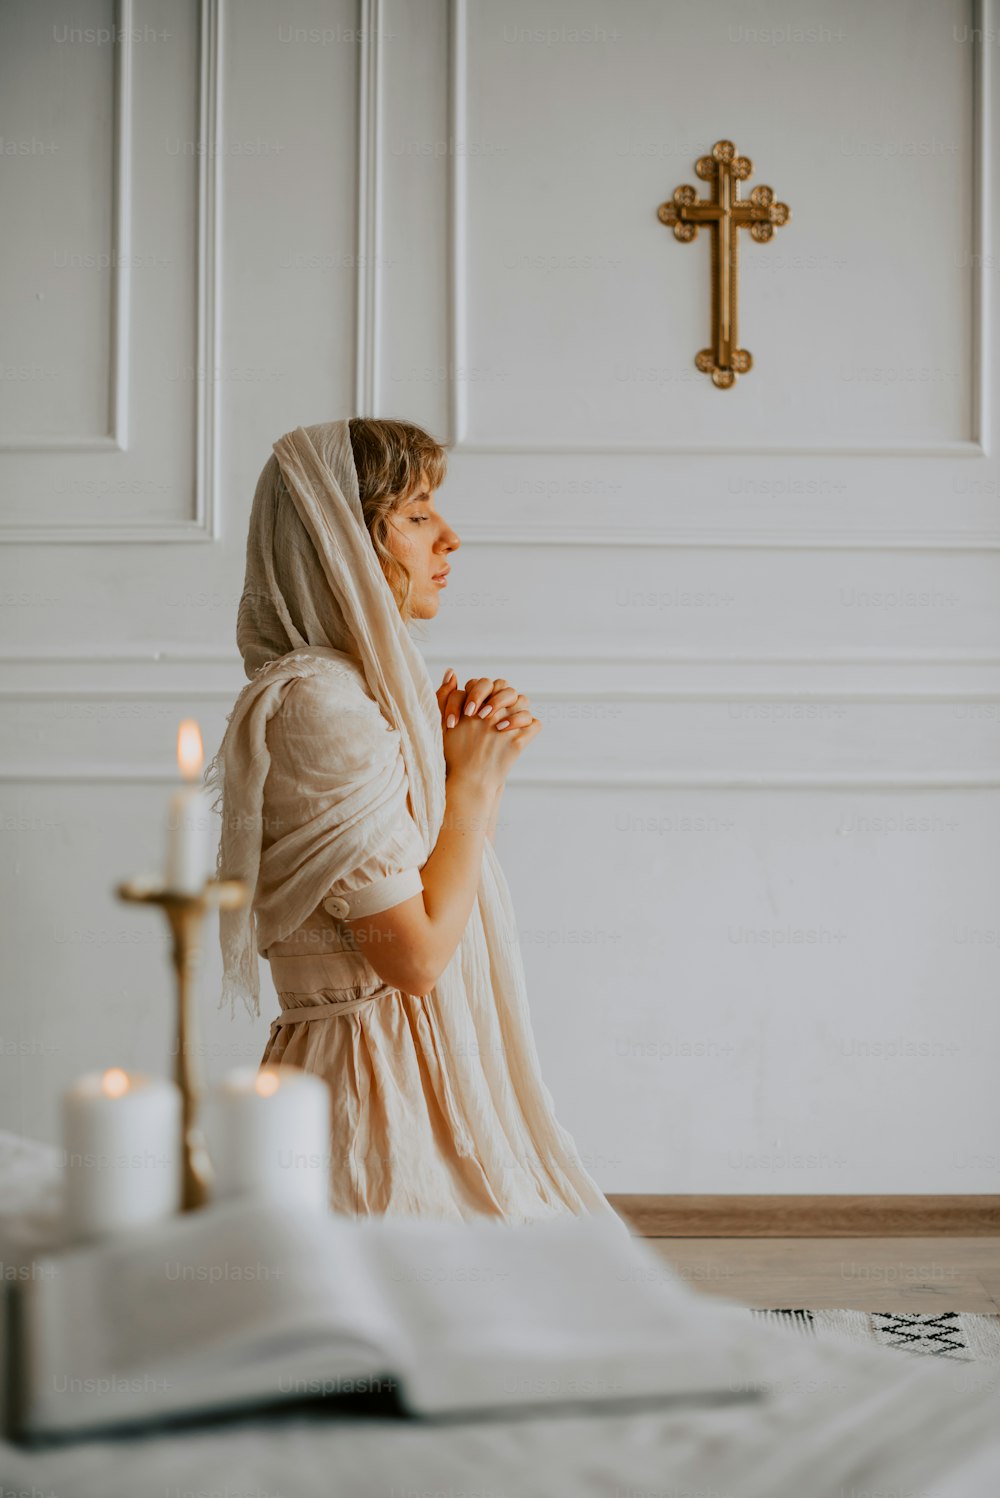 Eine Frau in einem weißen Kleid kniet vor einem Kreuz